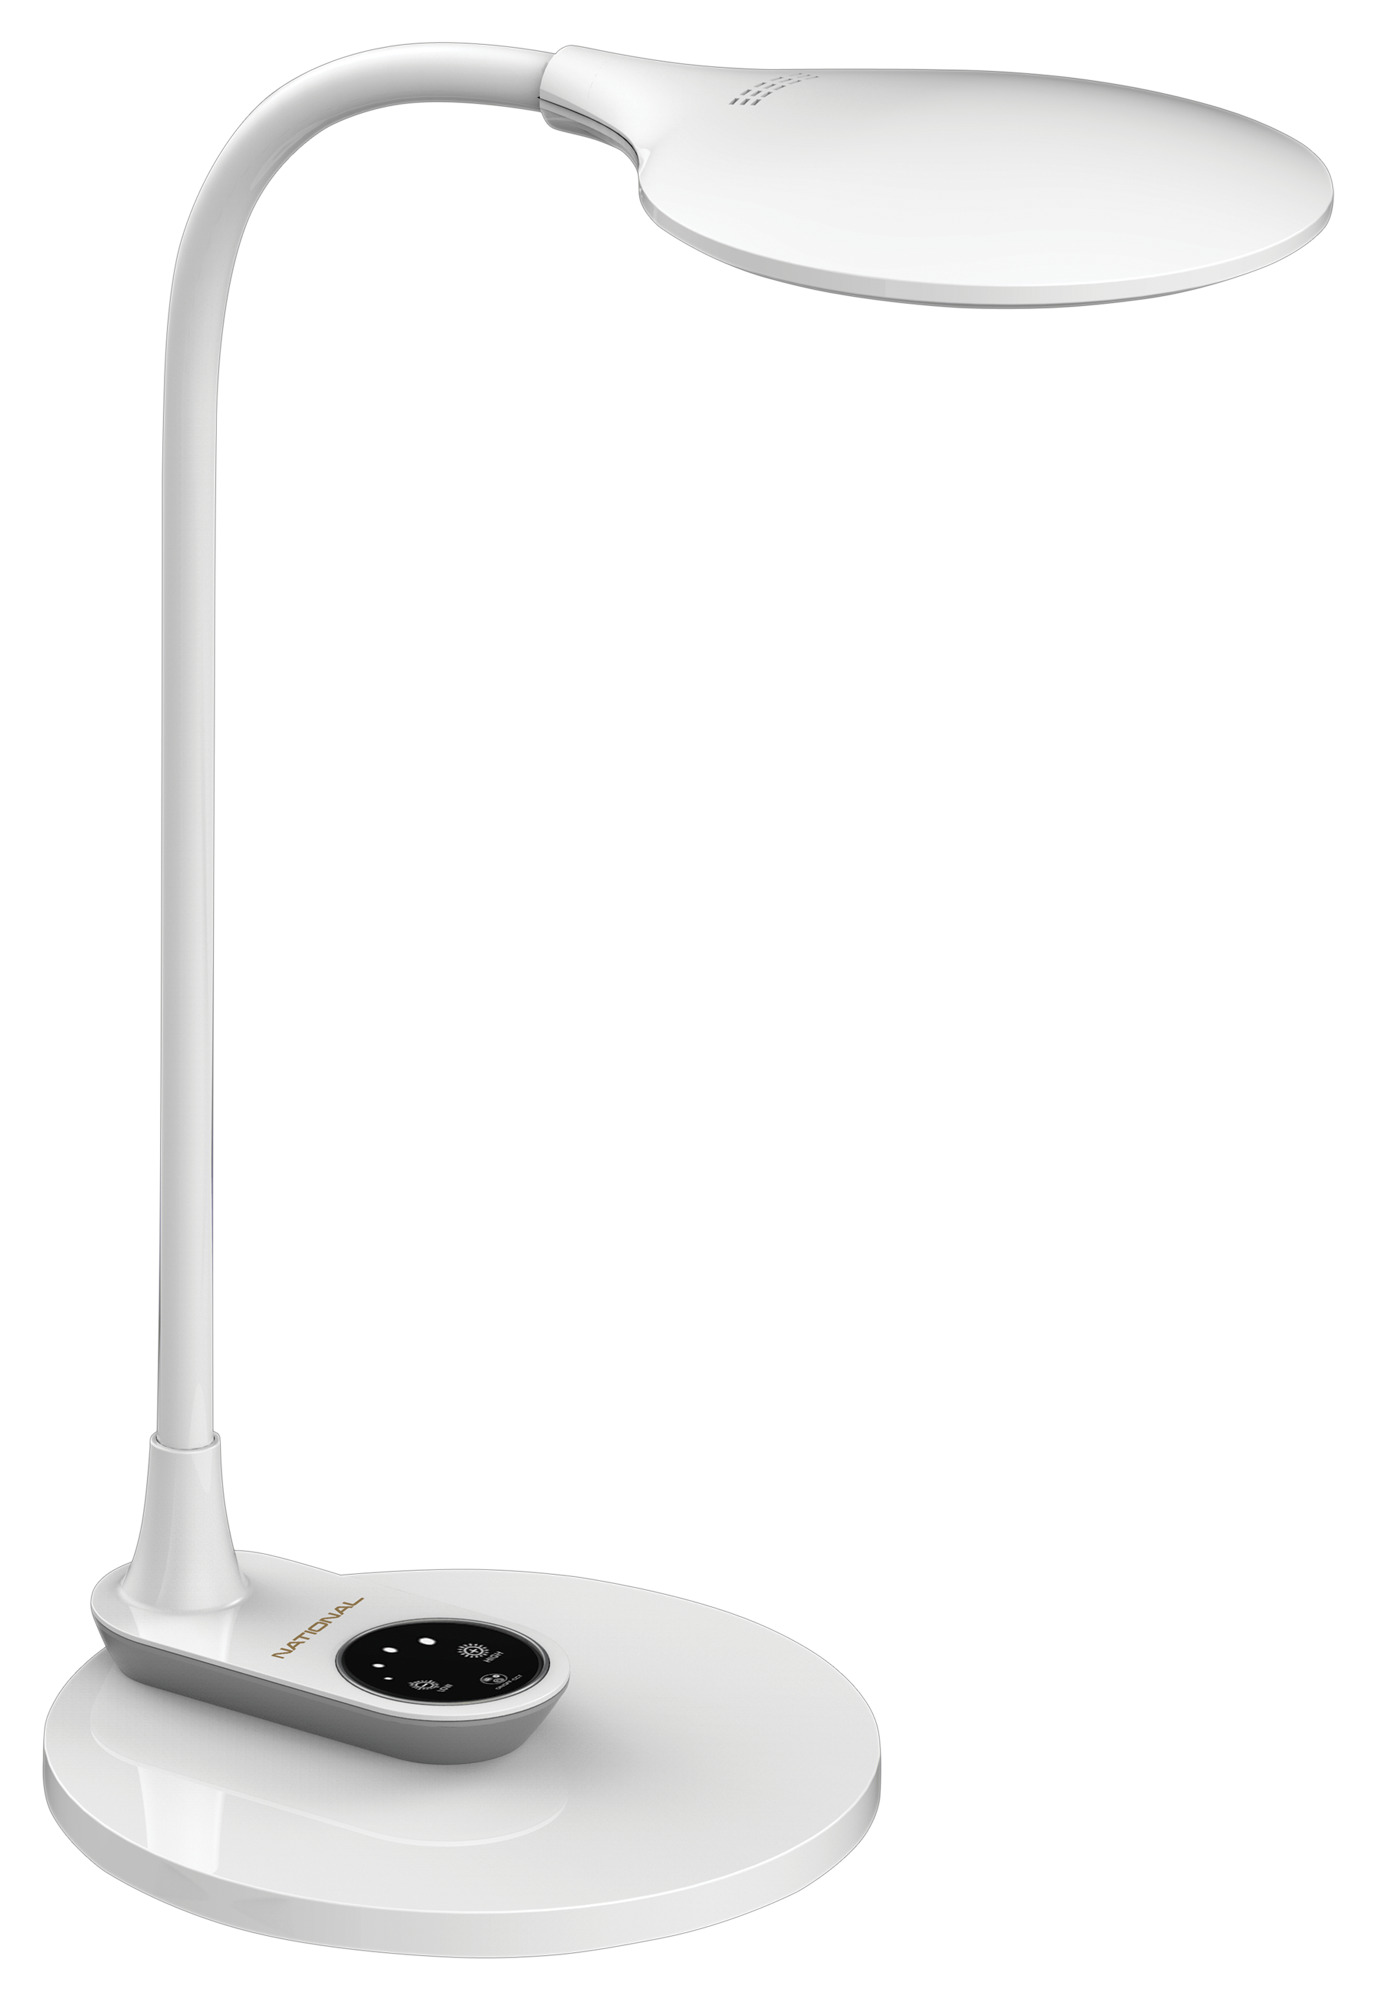 Картинка Настольный/настенный светильник NATIONAL NL-59LED white по разумной цене купить в интернет магазине mall.su